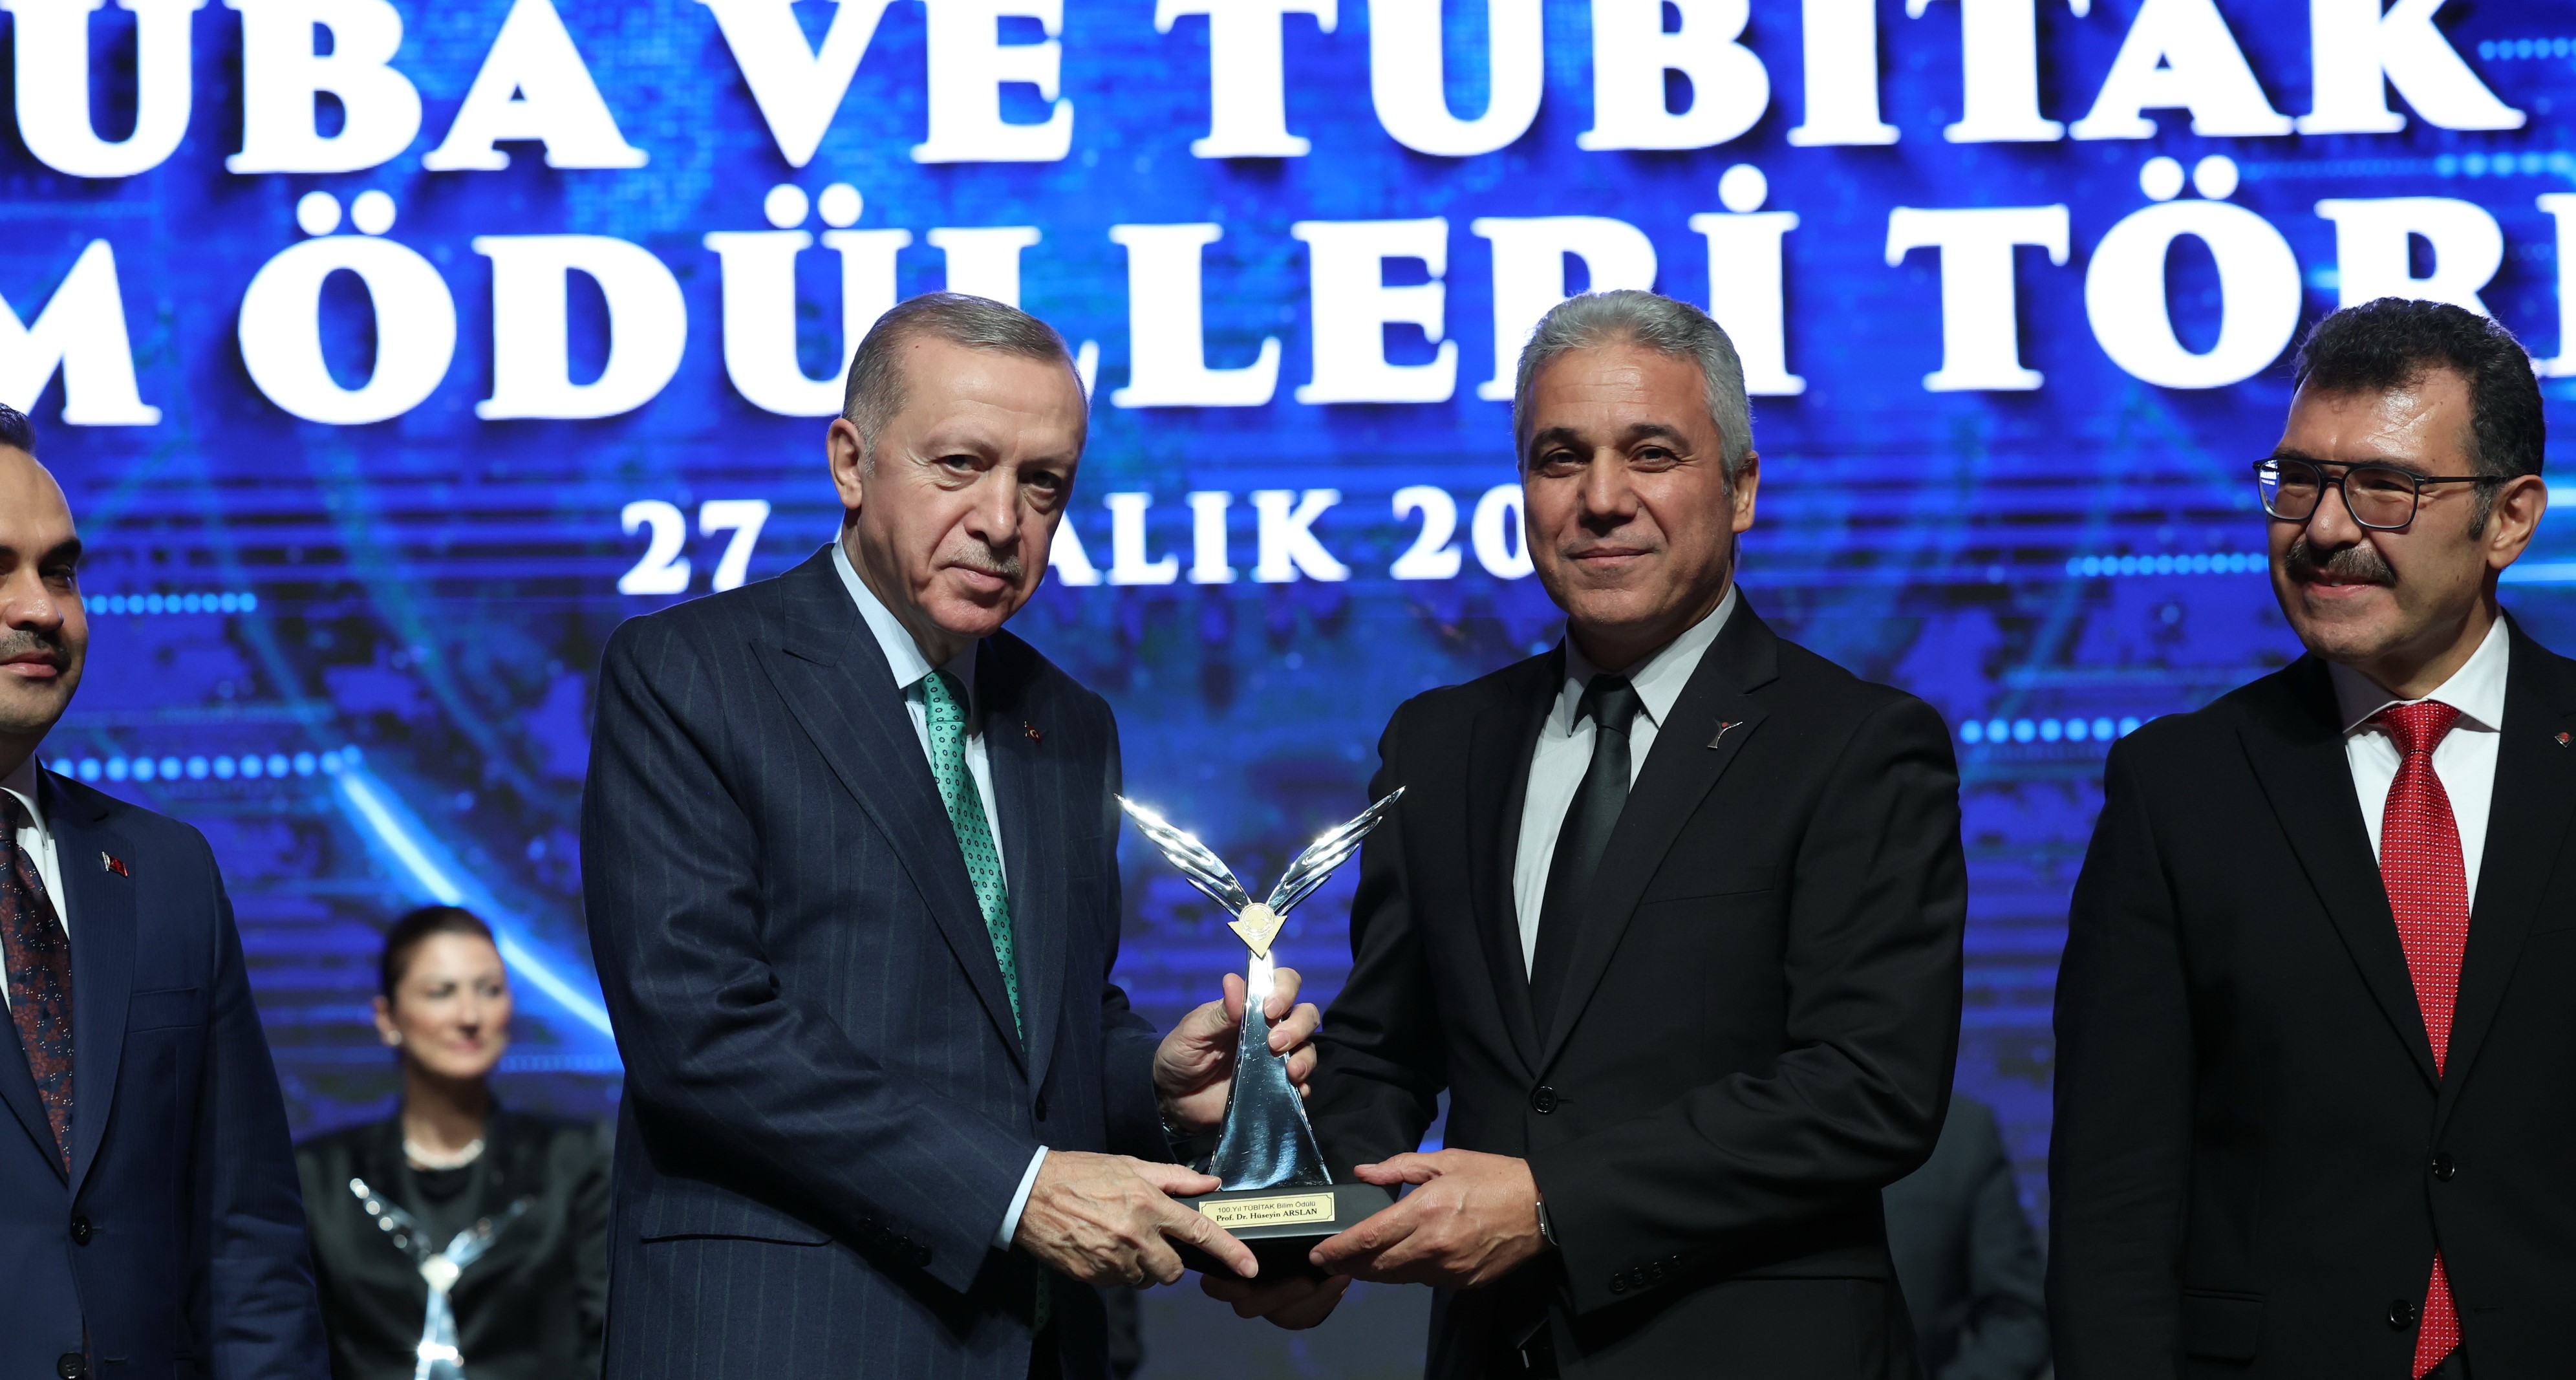 Dr. Arslan was presented with the “100. Yıl TÜBİTAK Bilim Ödülü”